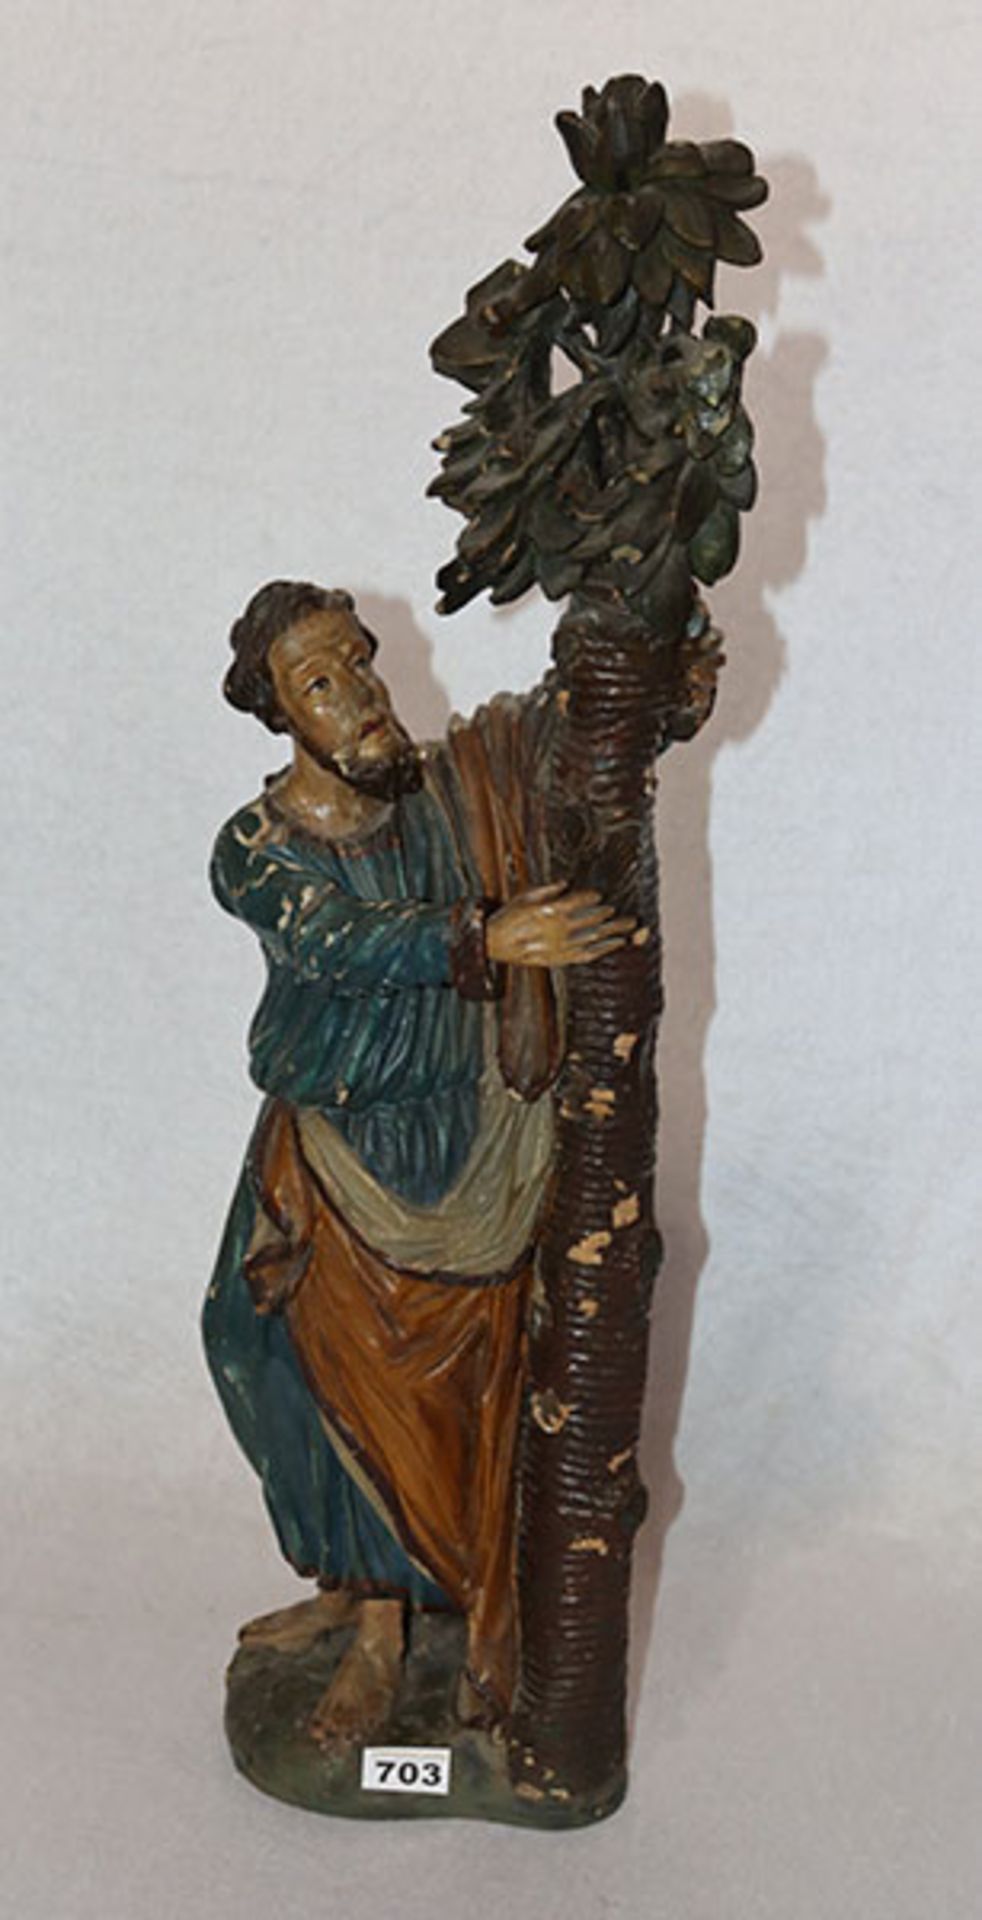 Holzfigur 'Jesus mit Baum', farbig gefaßt, stark beschädigt und geklebt, 19. Jahrhundert, H 75 cm,